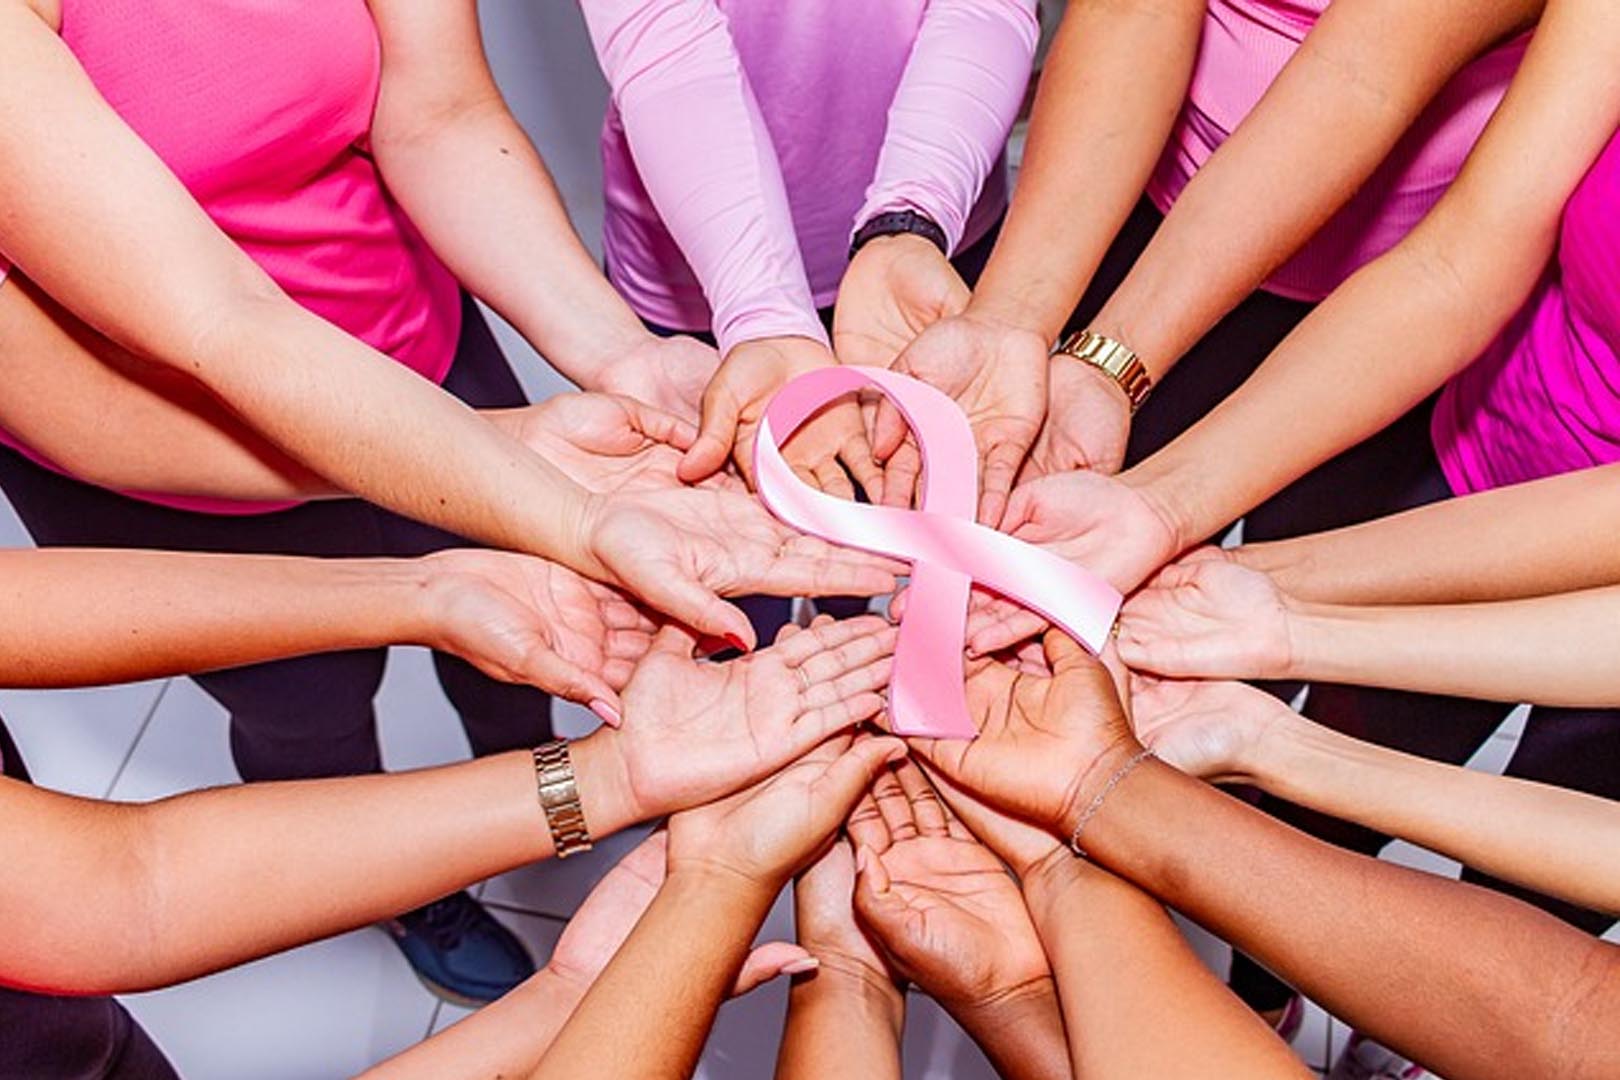 BPOM RI Keluarkan Izin Penggunaan Obat Kanker Payudara Abemaciclib